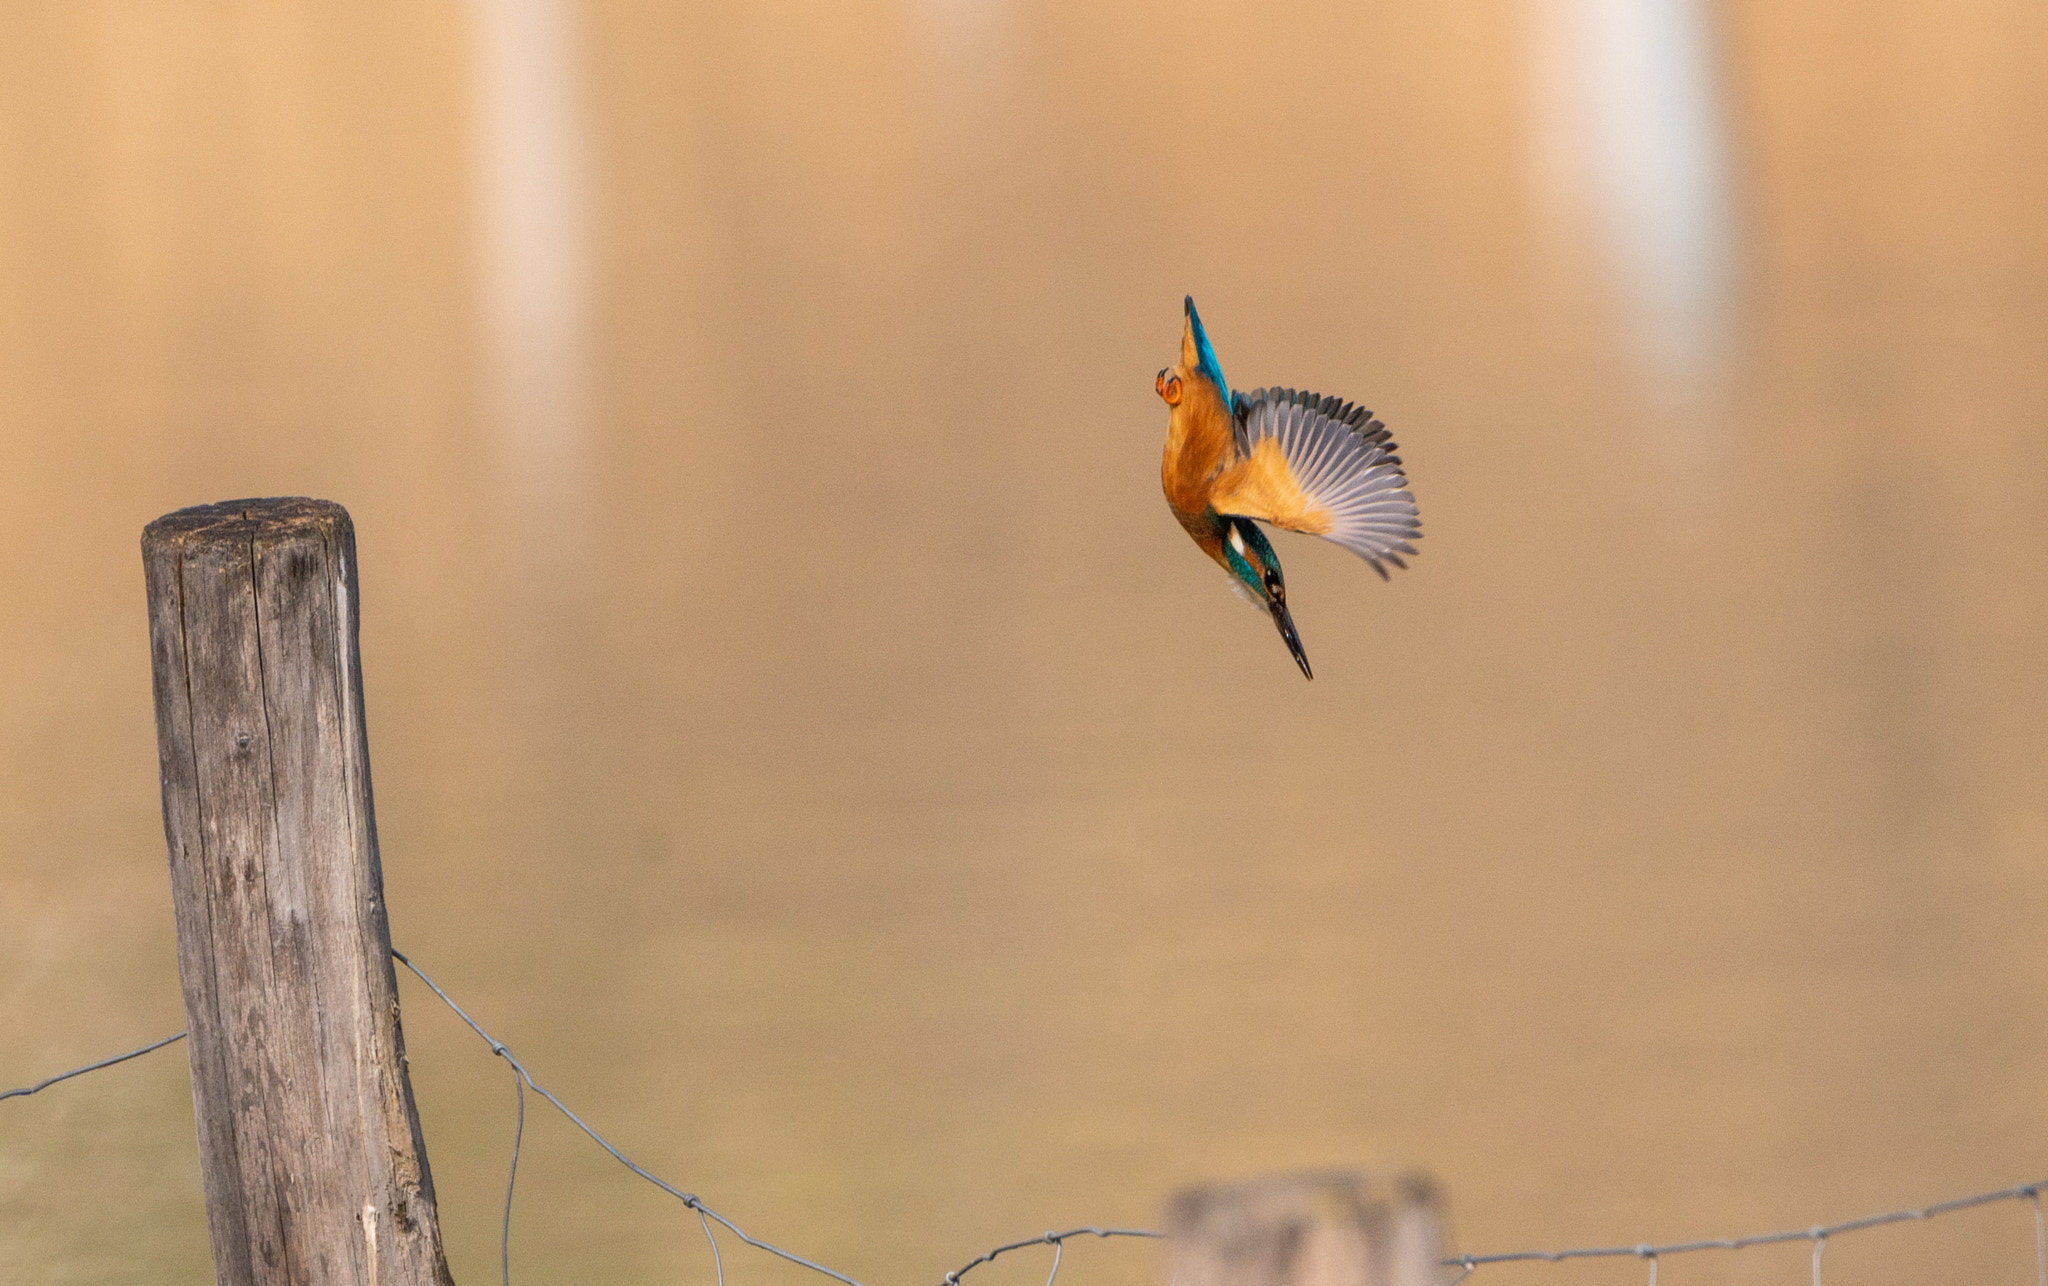 Kingfisher launching